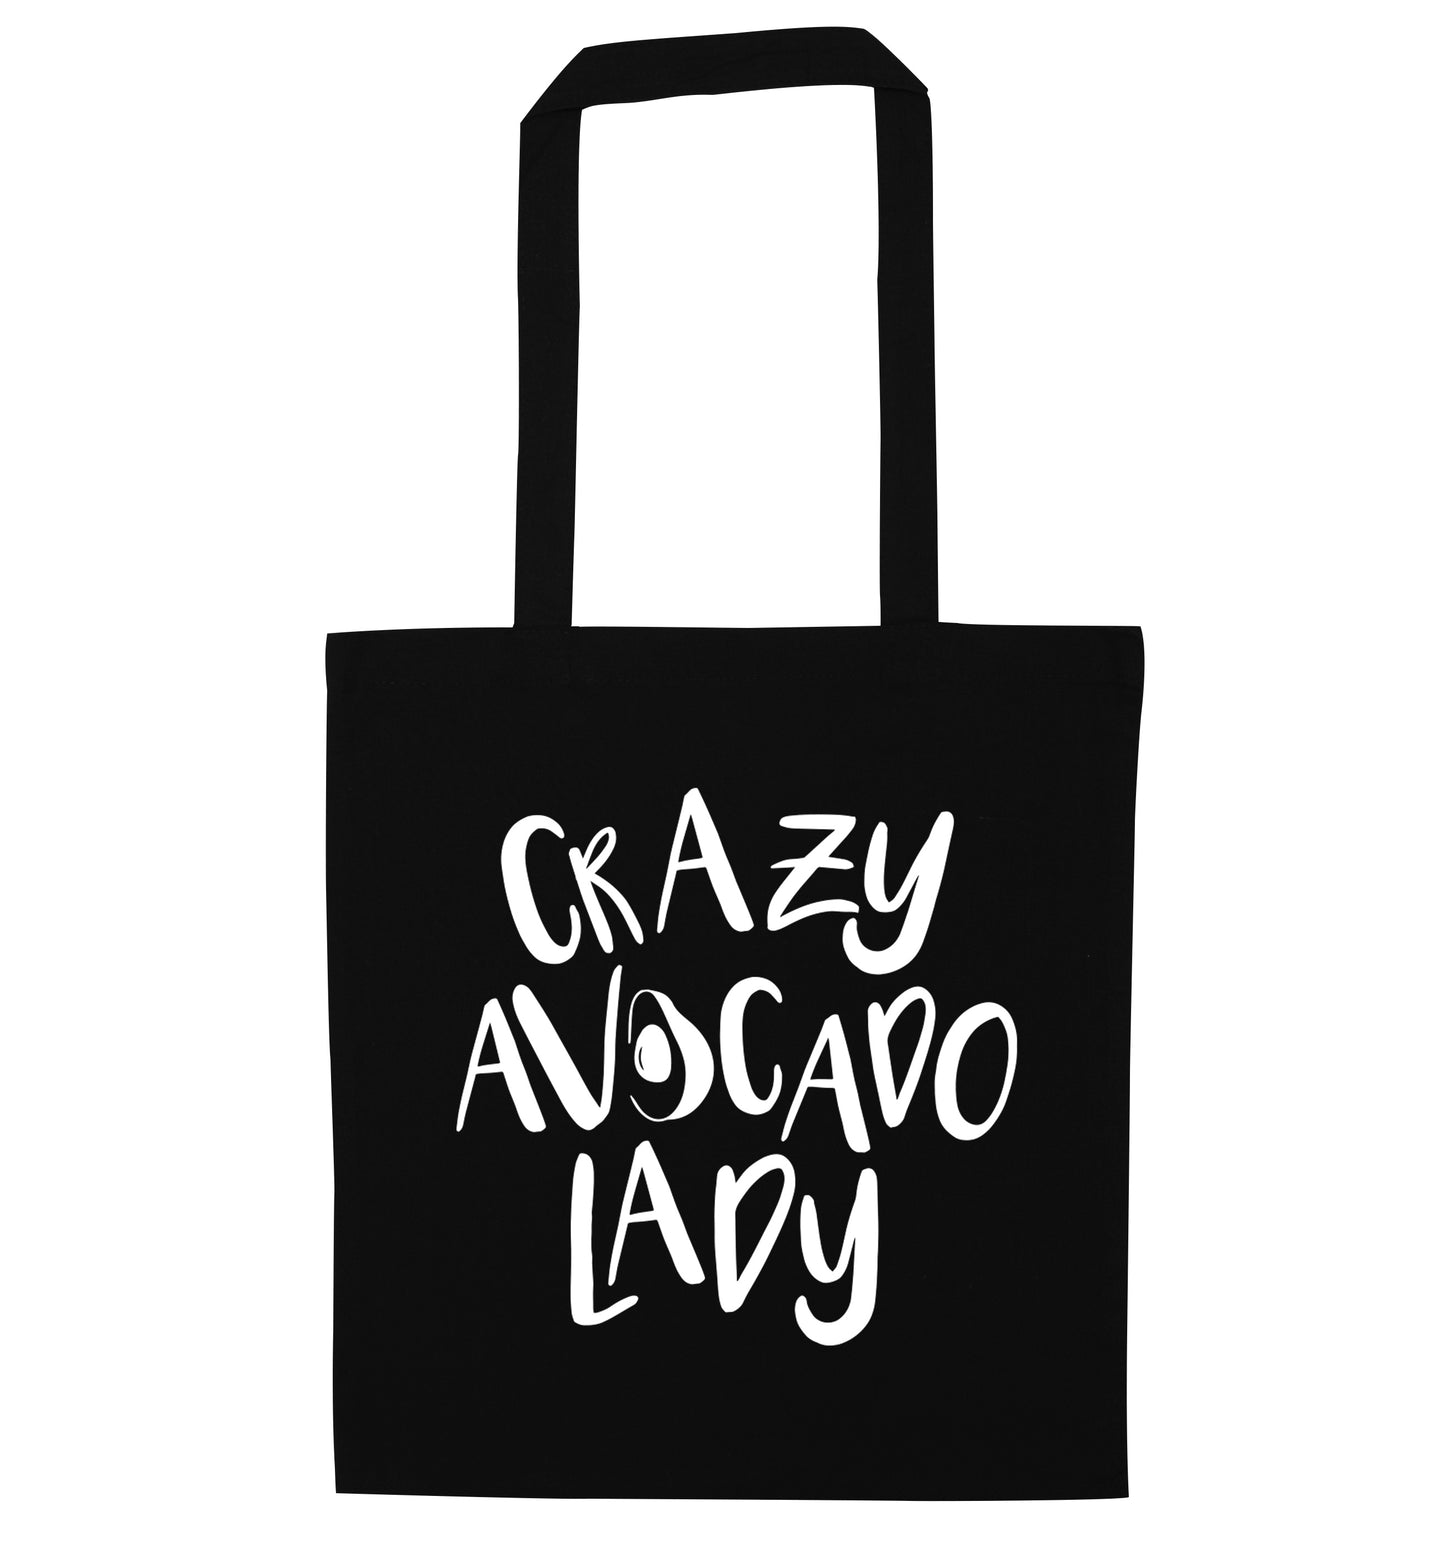 Crazy avocado lady black tote bag